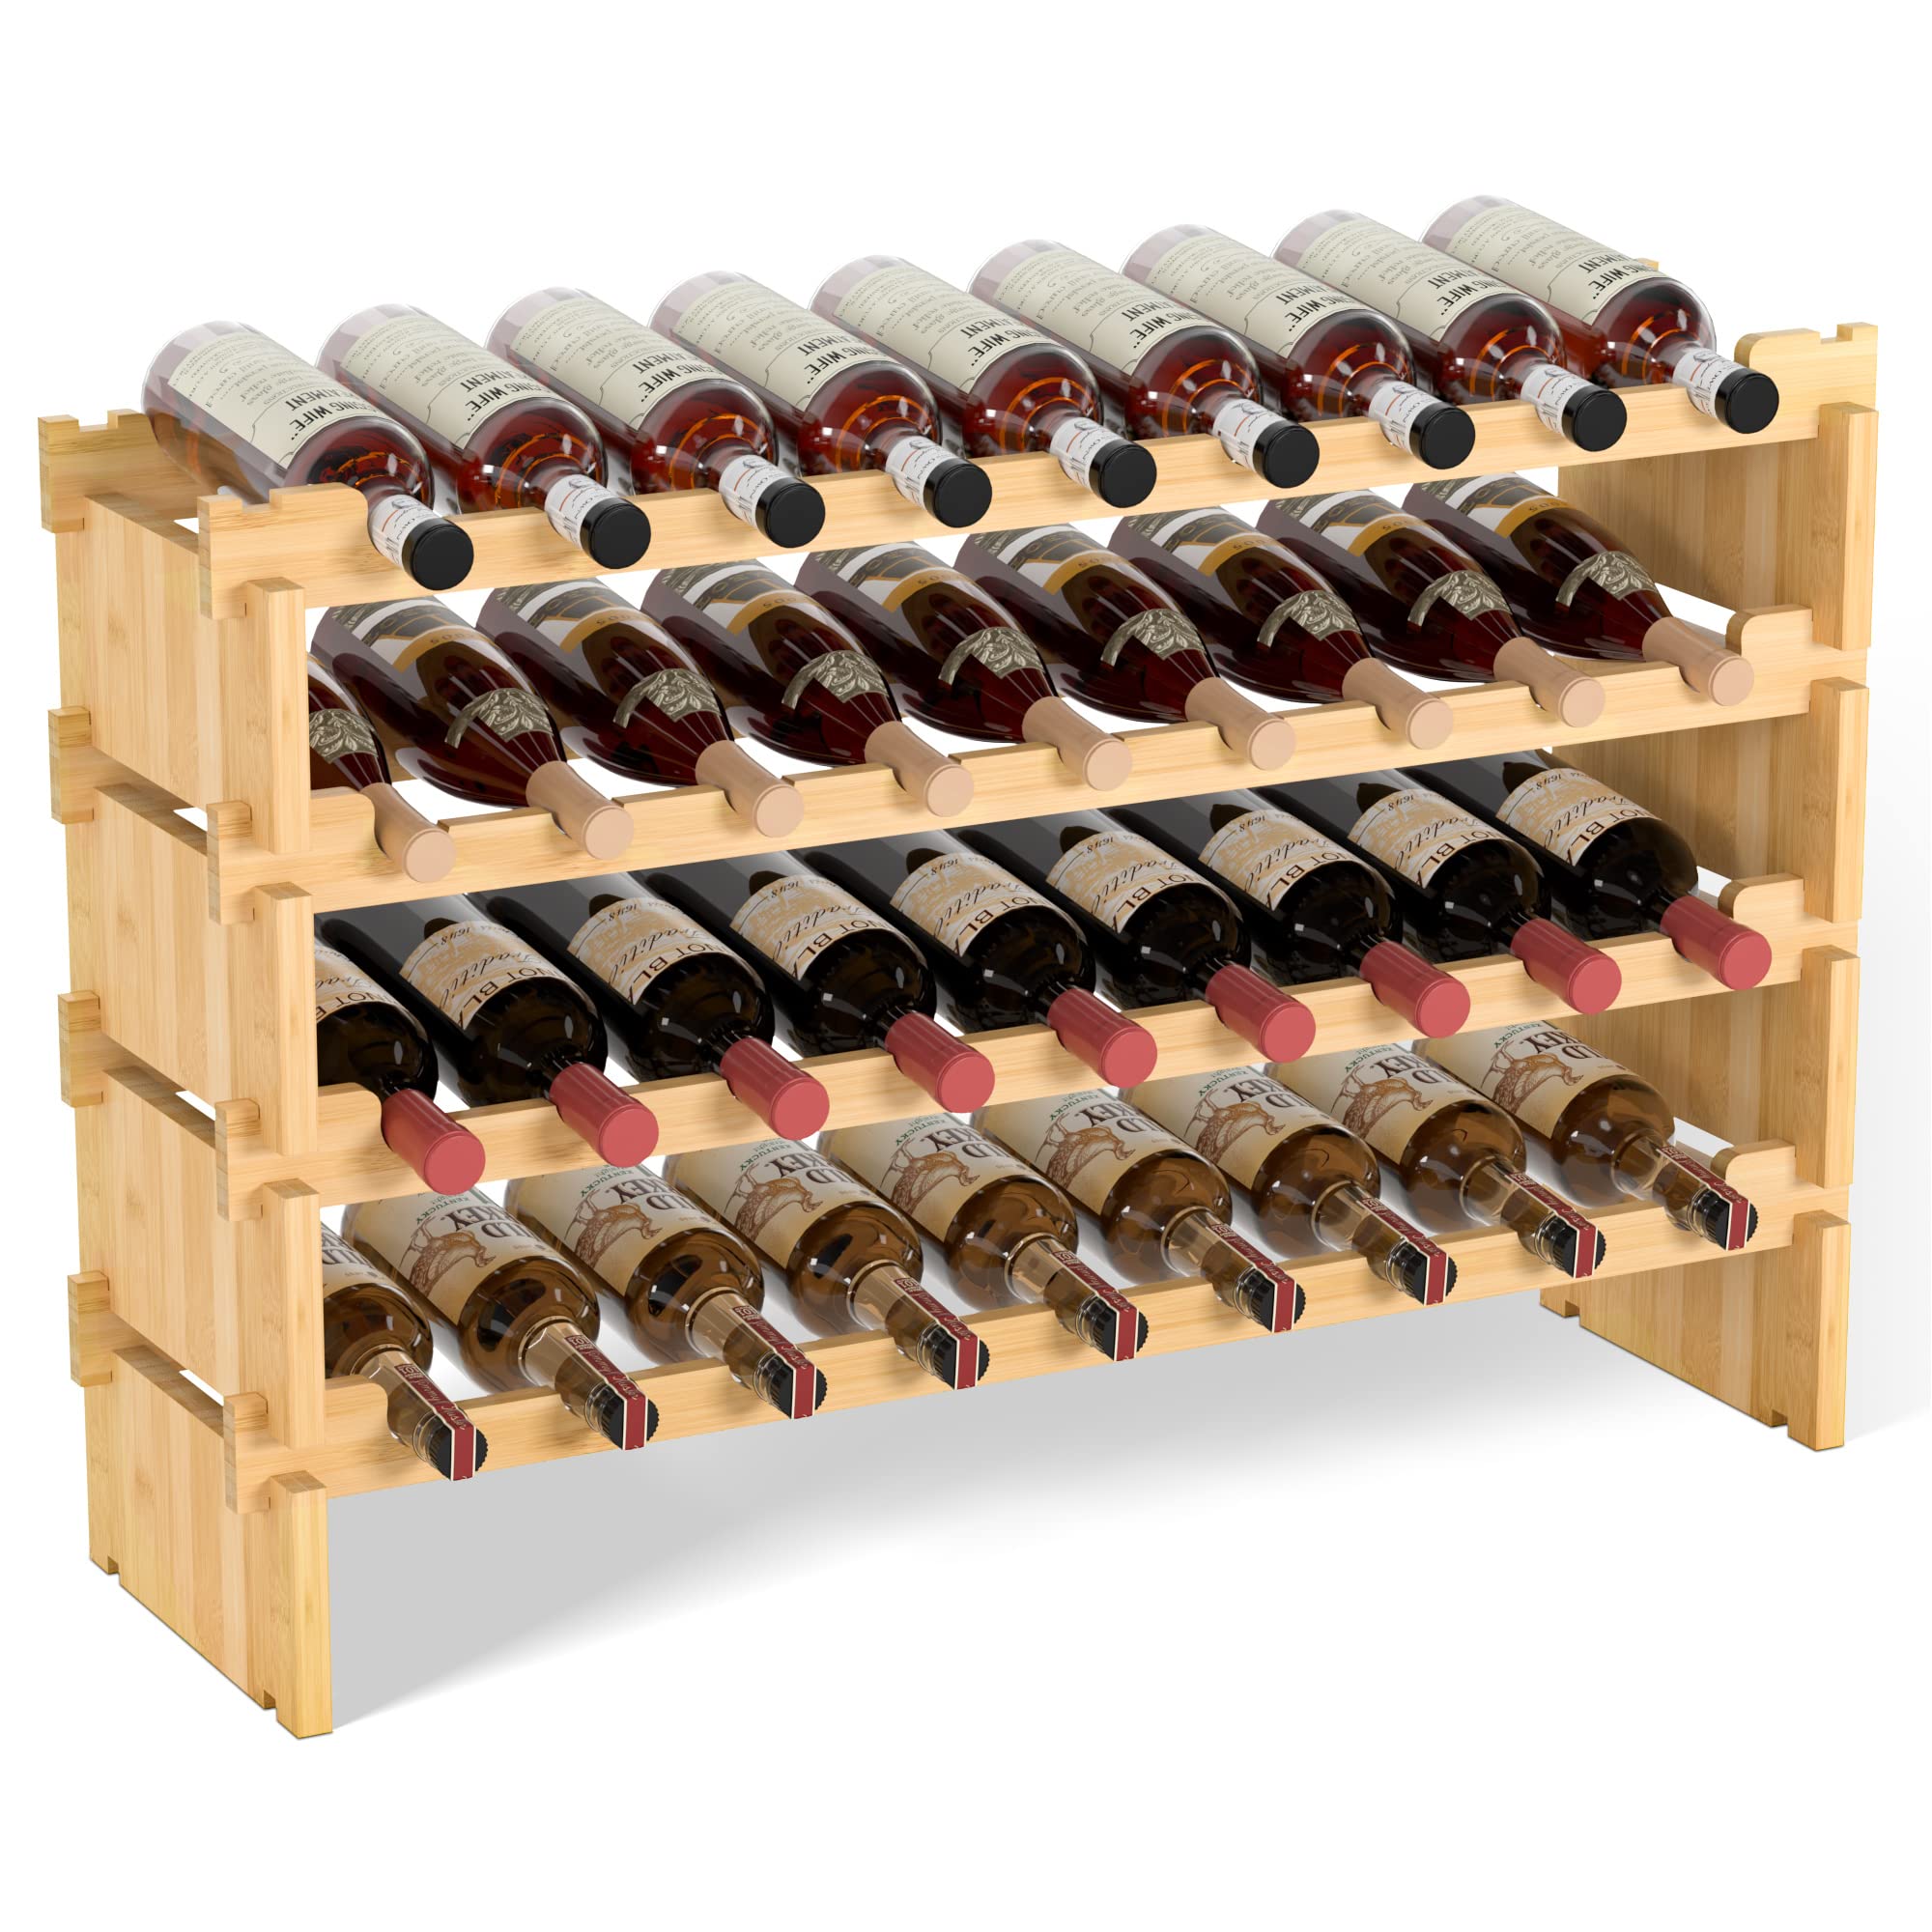 Shangrun 4 Tiers Stackable Wine Rack